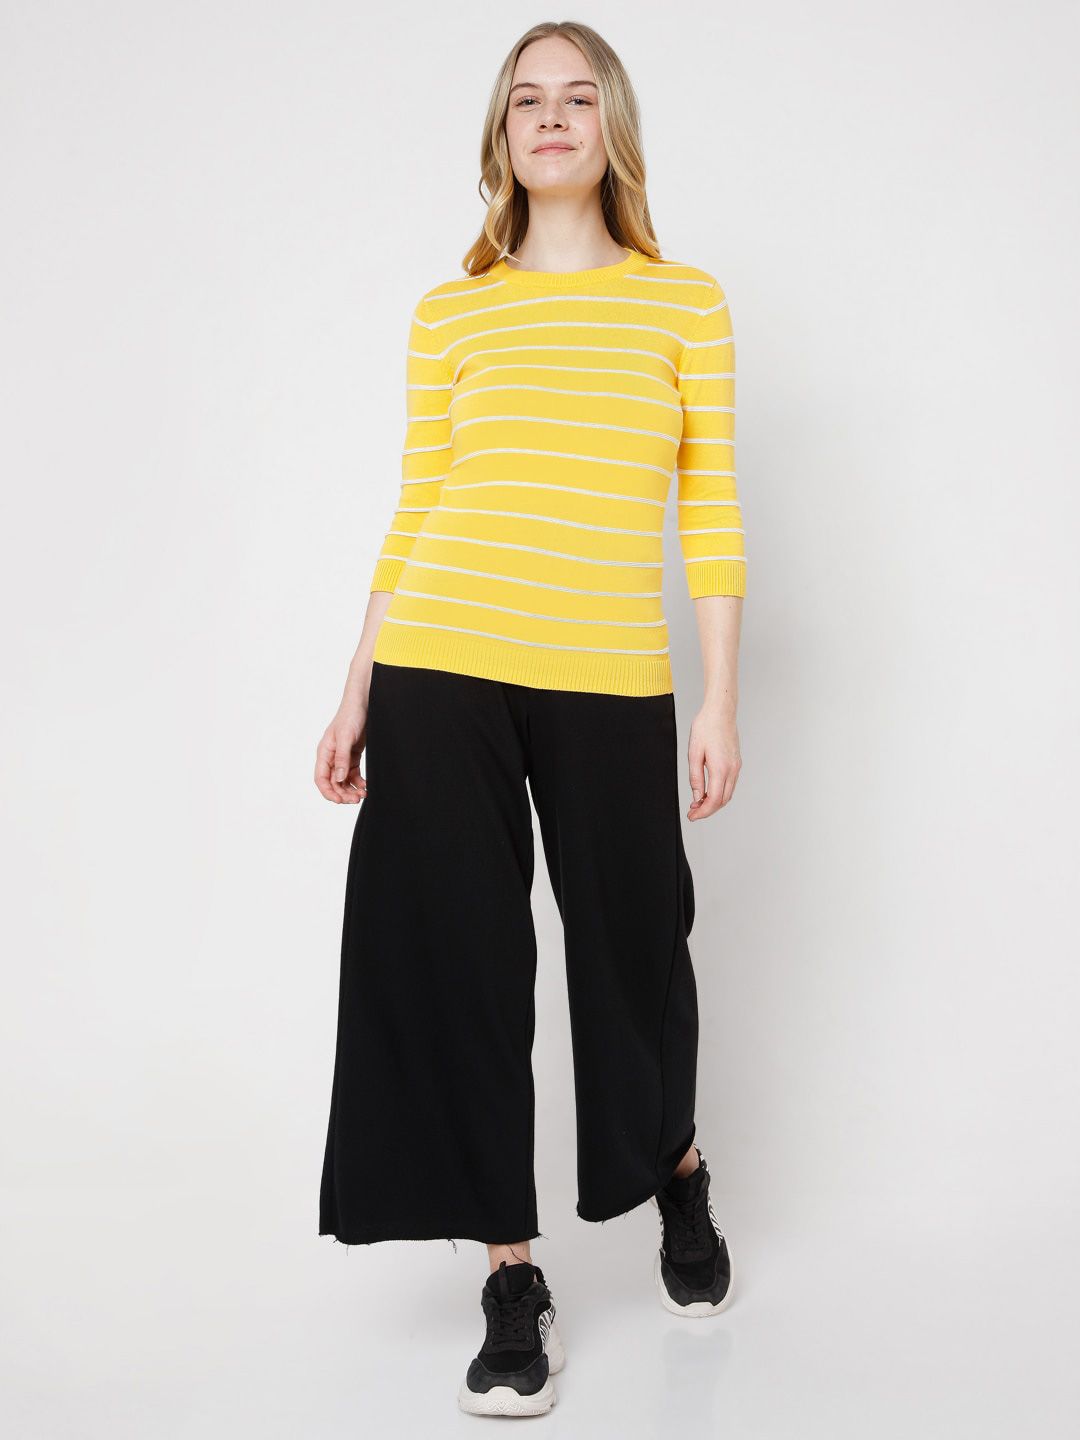 Vero Moda Women Yellow & White Striped Pullover Price in India